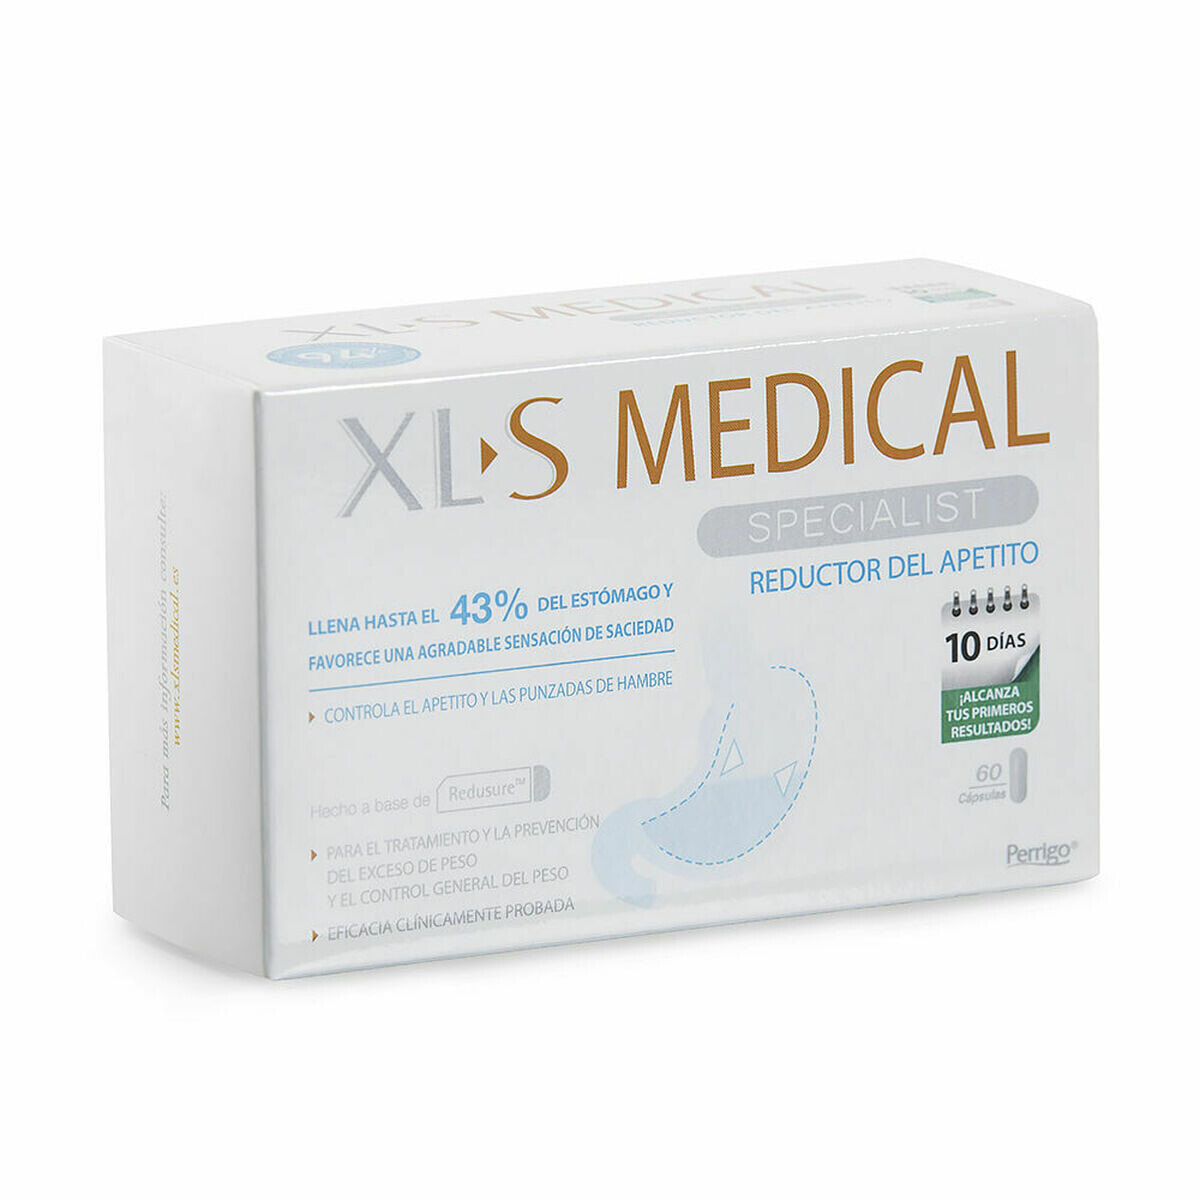 Digestive supplement XLS Medical 60 Units